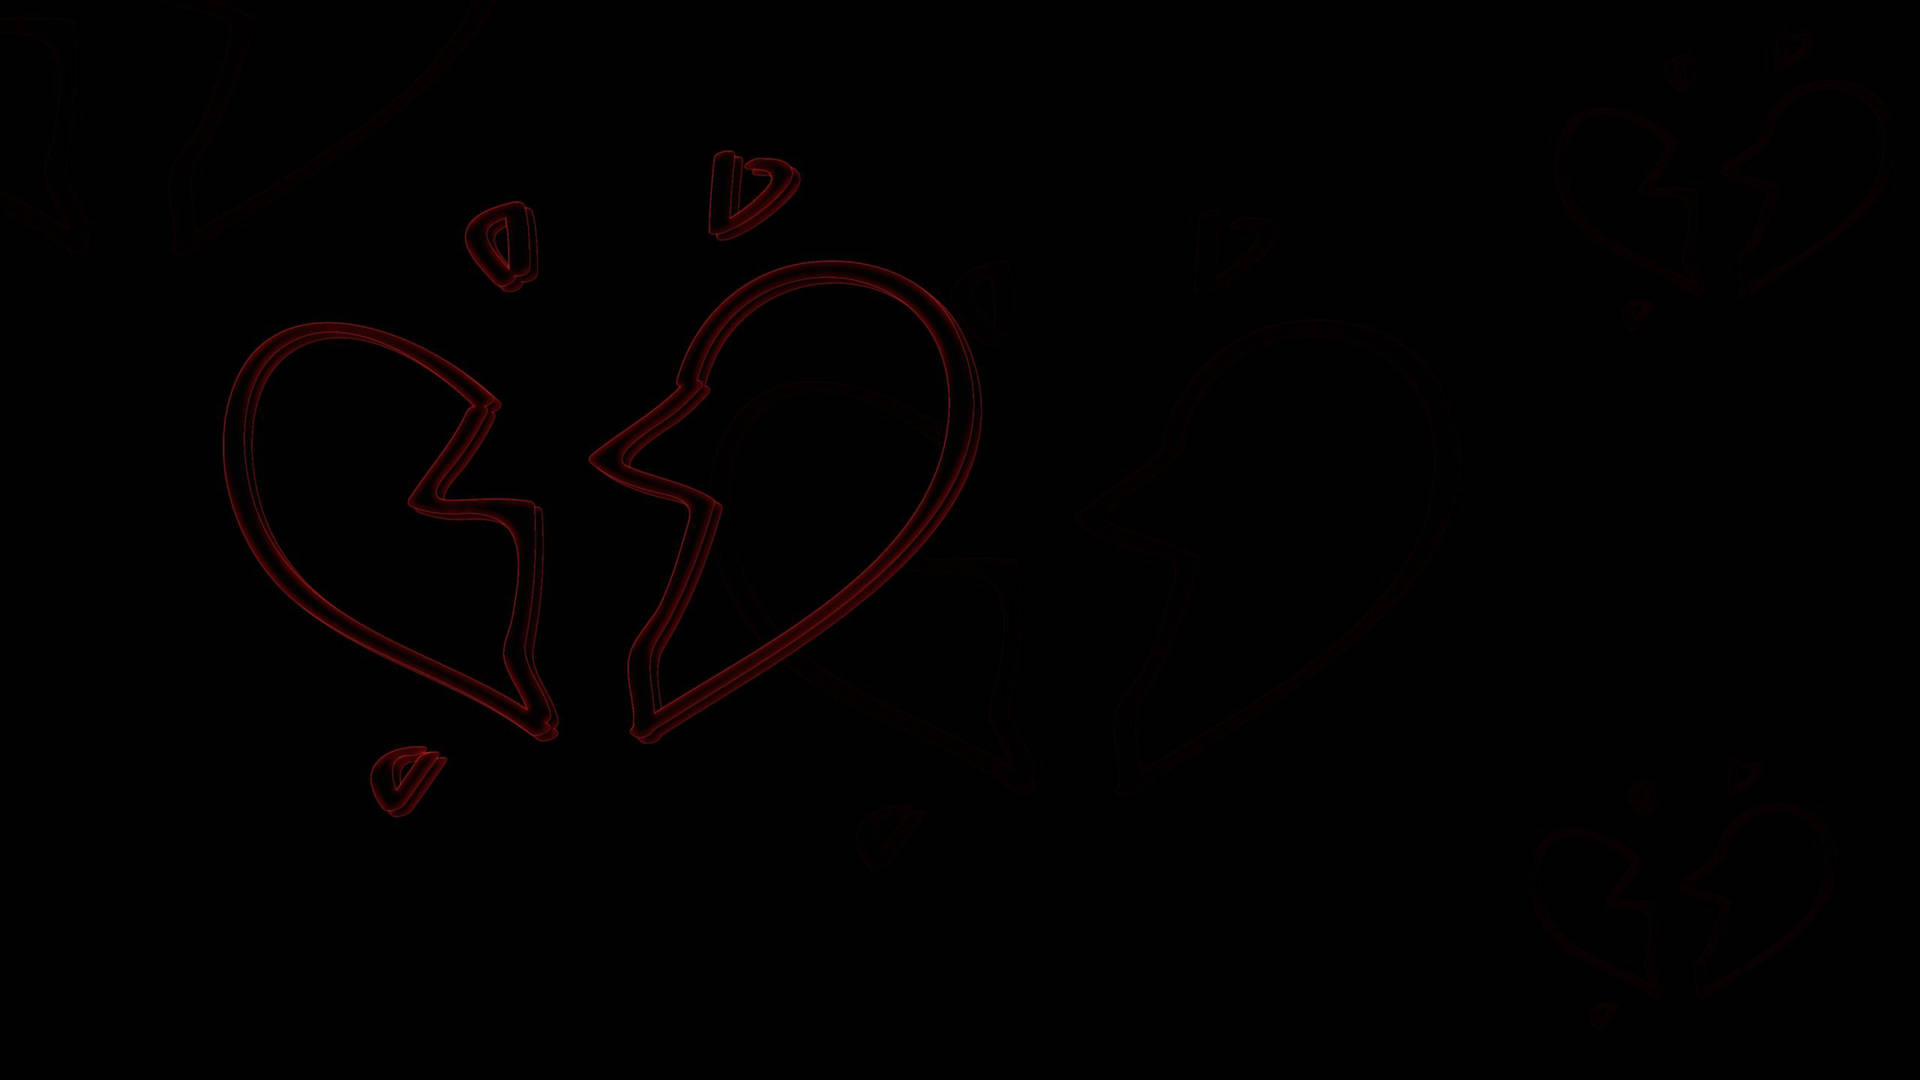 Dark Red Broken Heart 4k Wallpaper